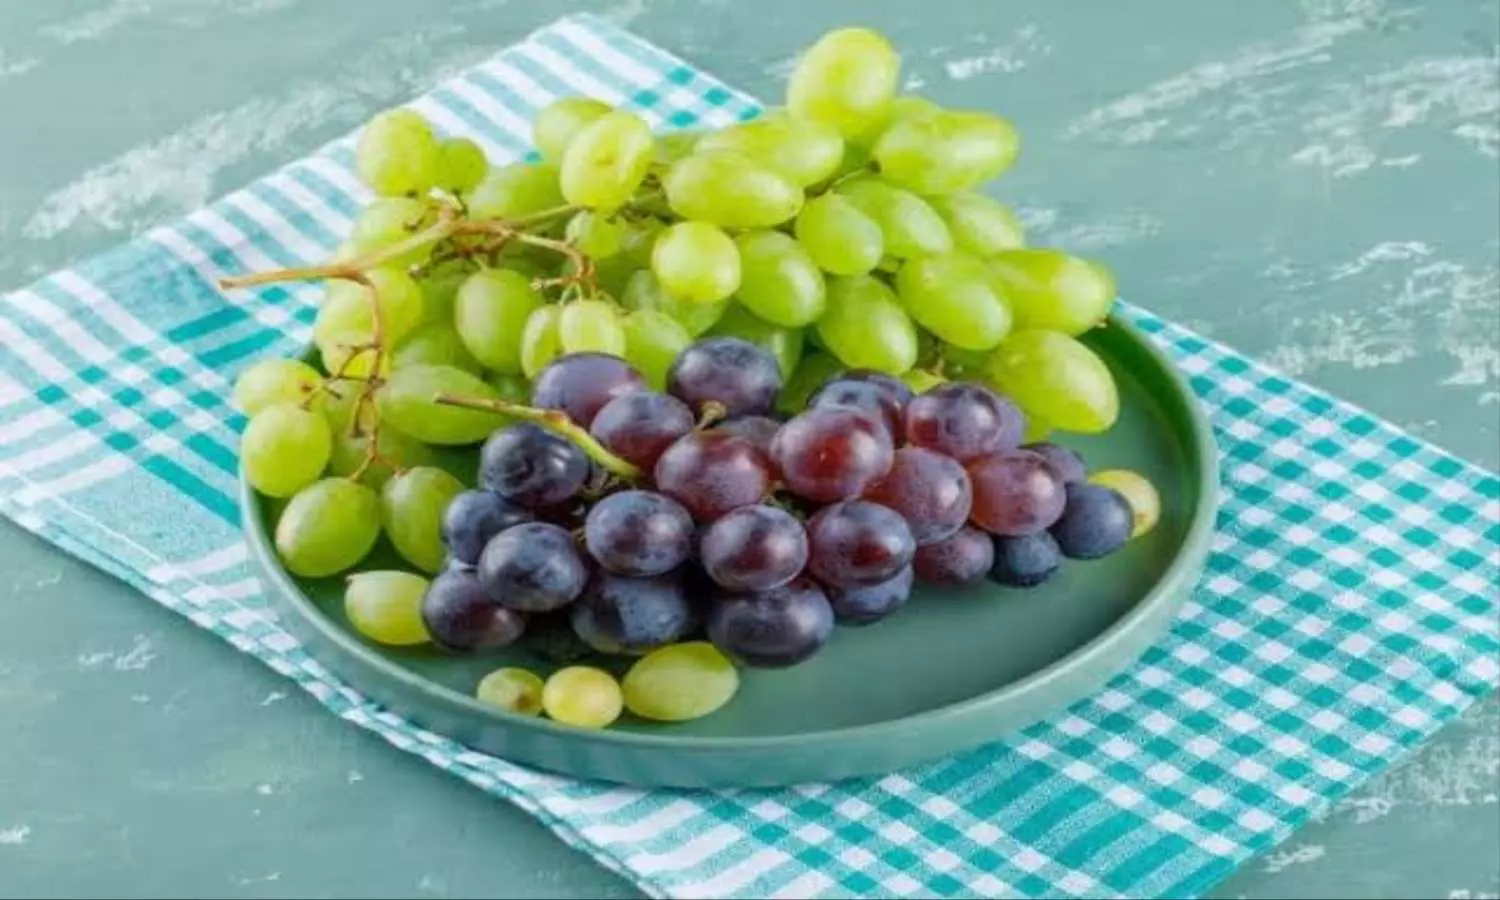 Grapes Weight Loss: वजन कम करना चाहते हैं तो क्या अंगूर को करें डाइट से बाहर? जानें पूरी सच्चाई